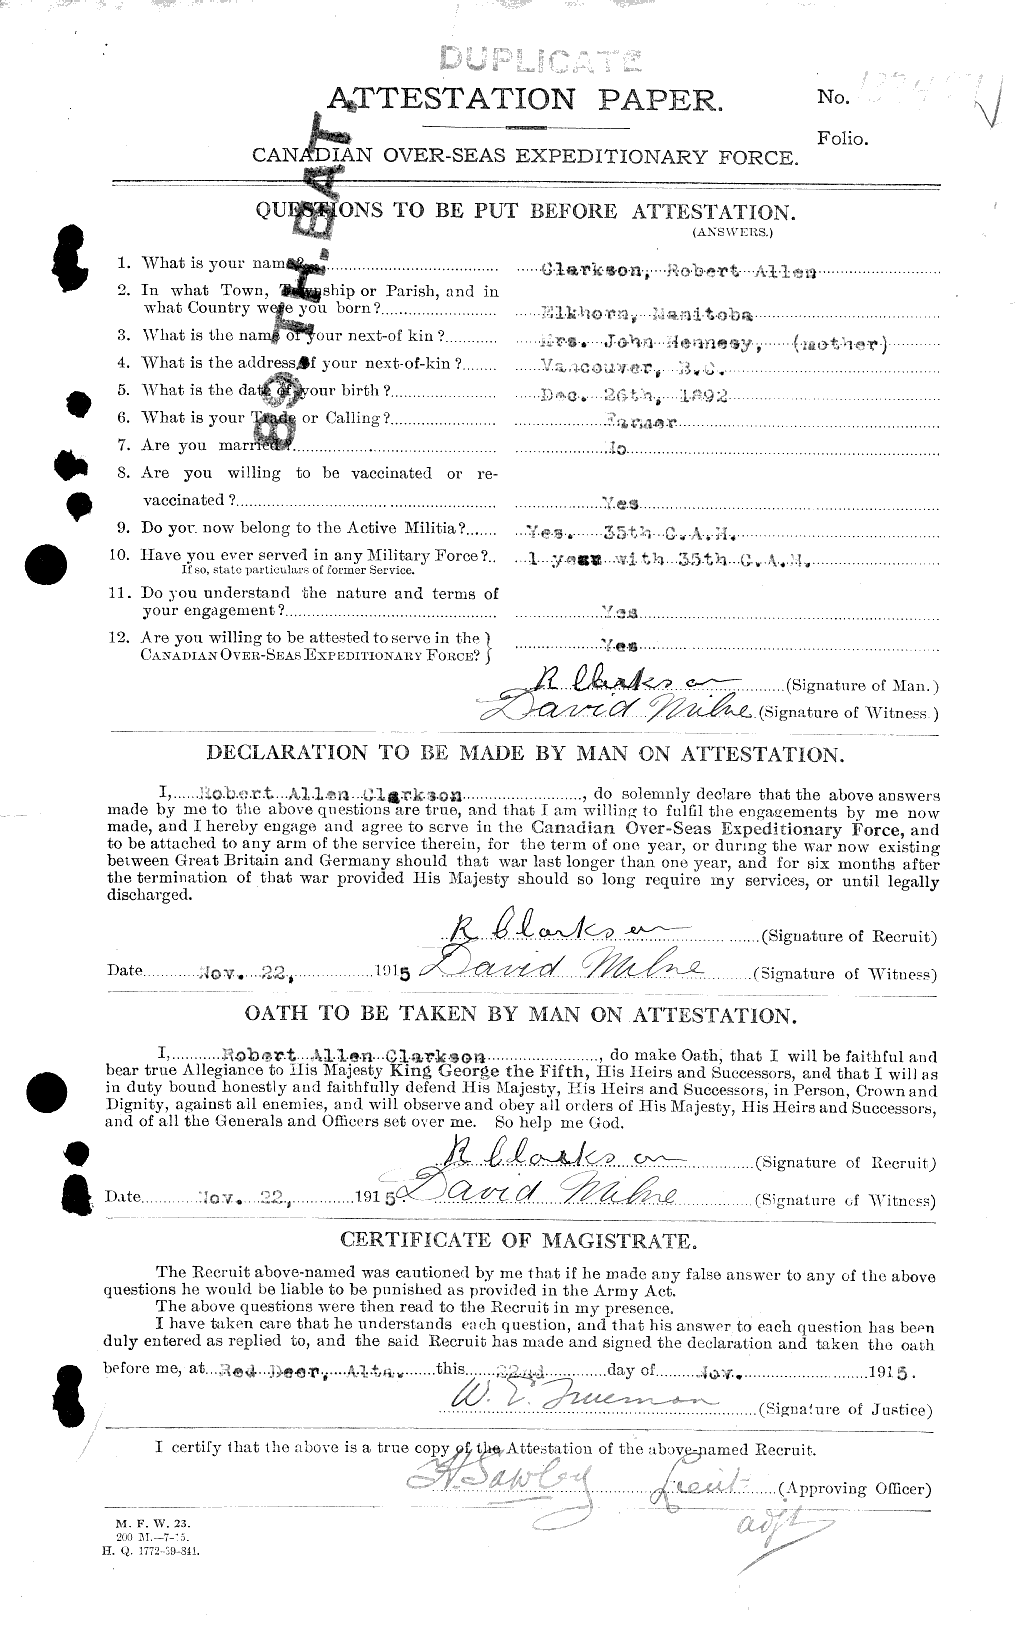 Dossiers du Personnel de la Première Guerre mondiale - CEC 019004a